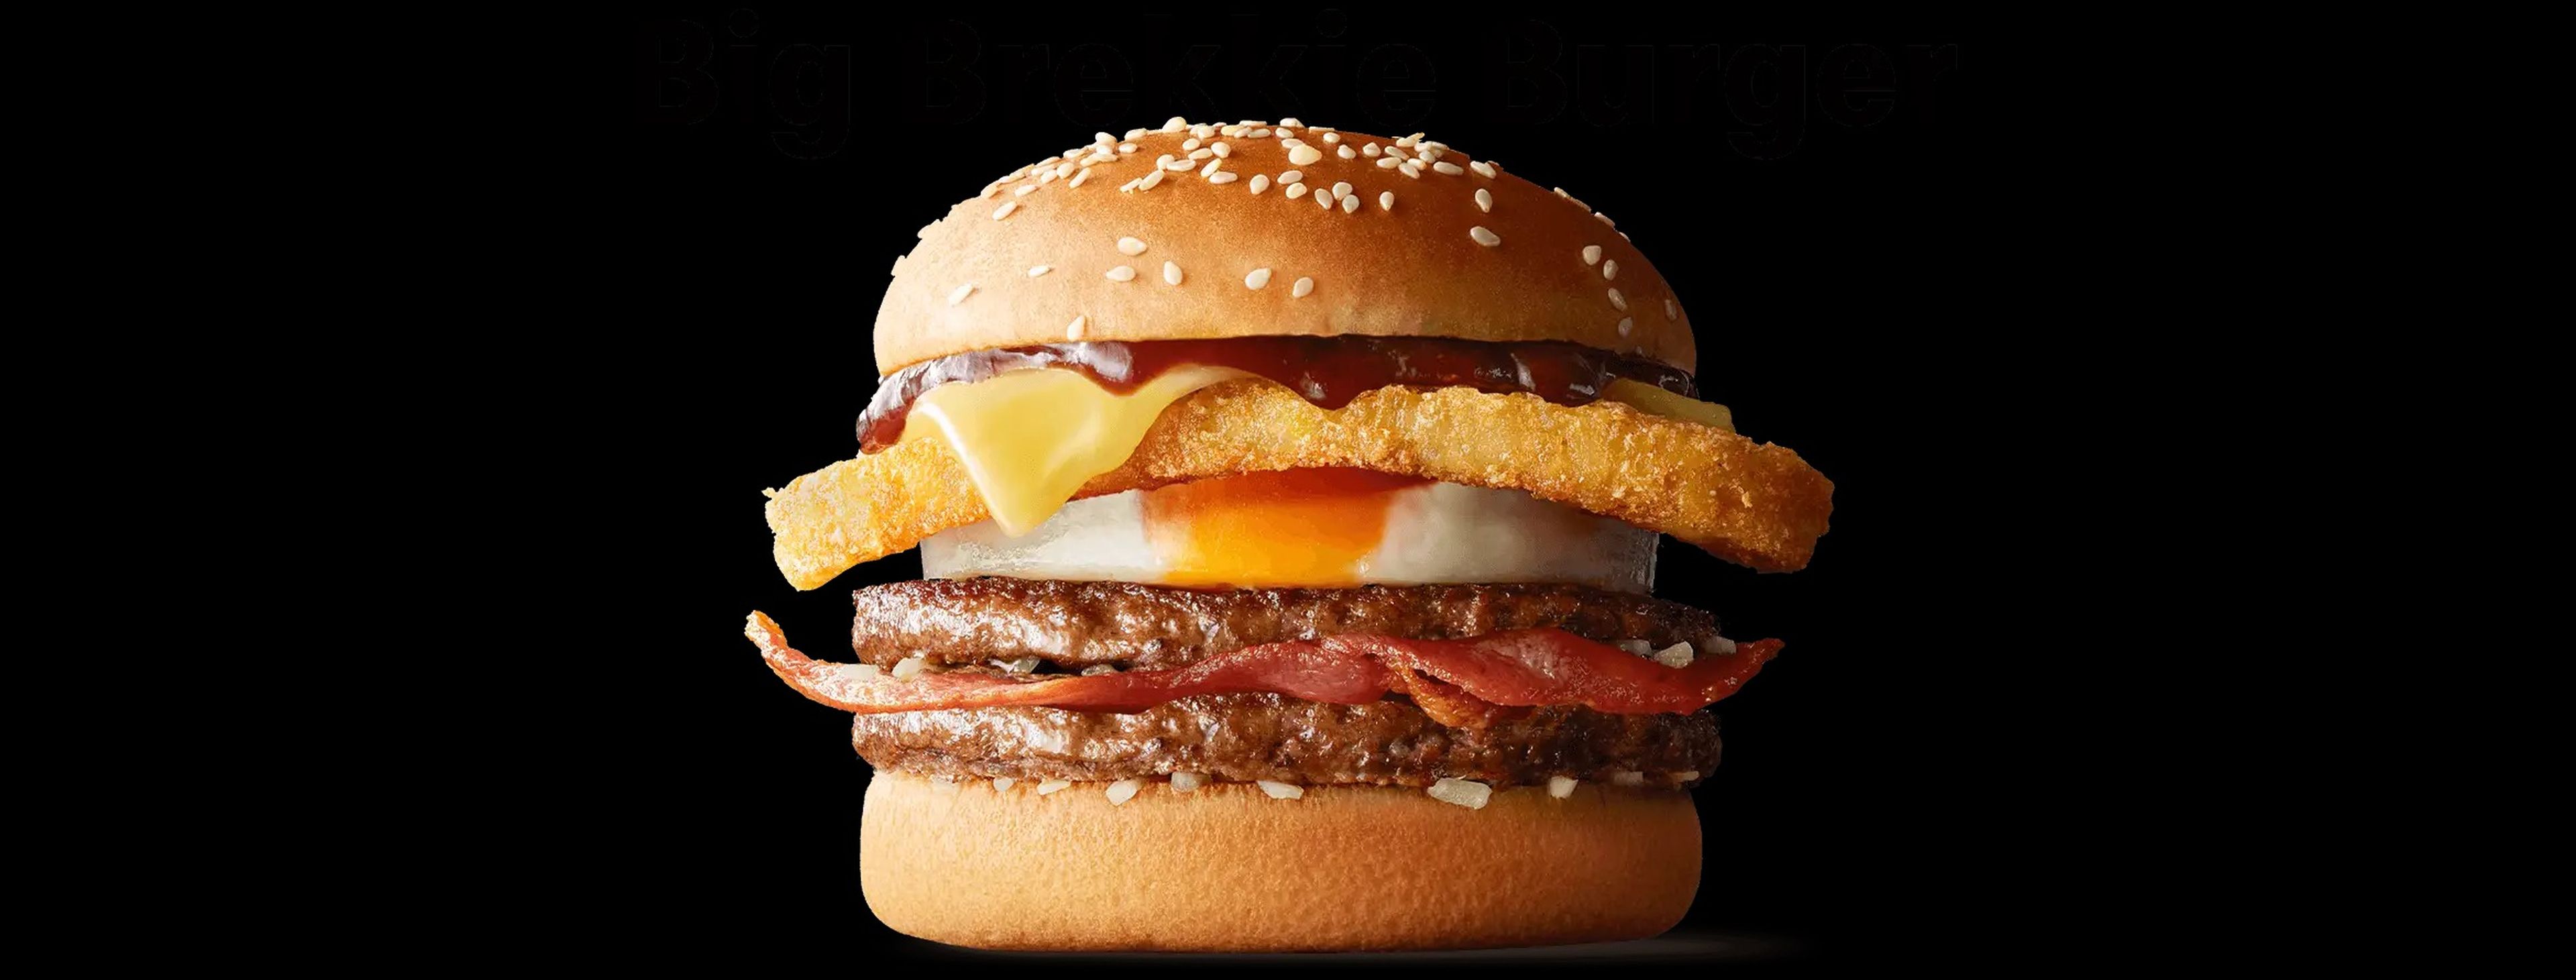 McDonald's Big Brekkie Burger